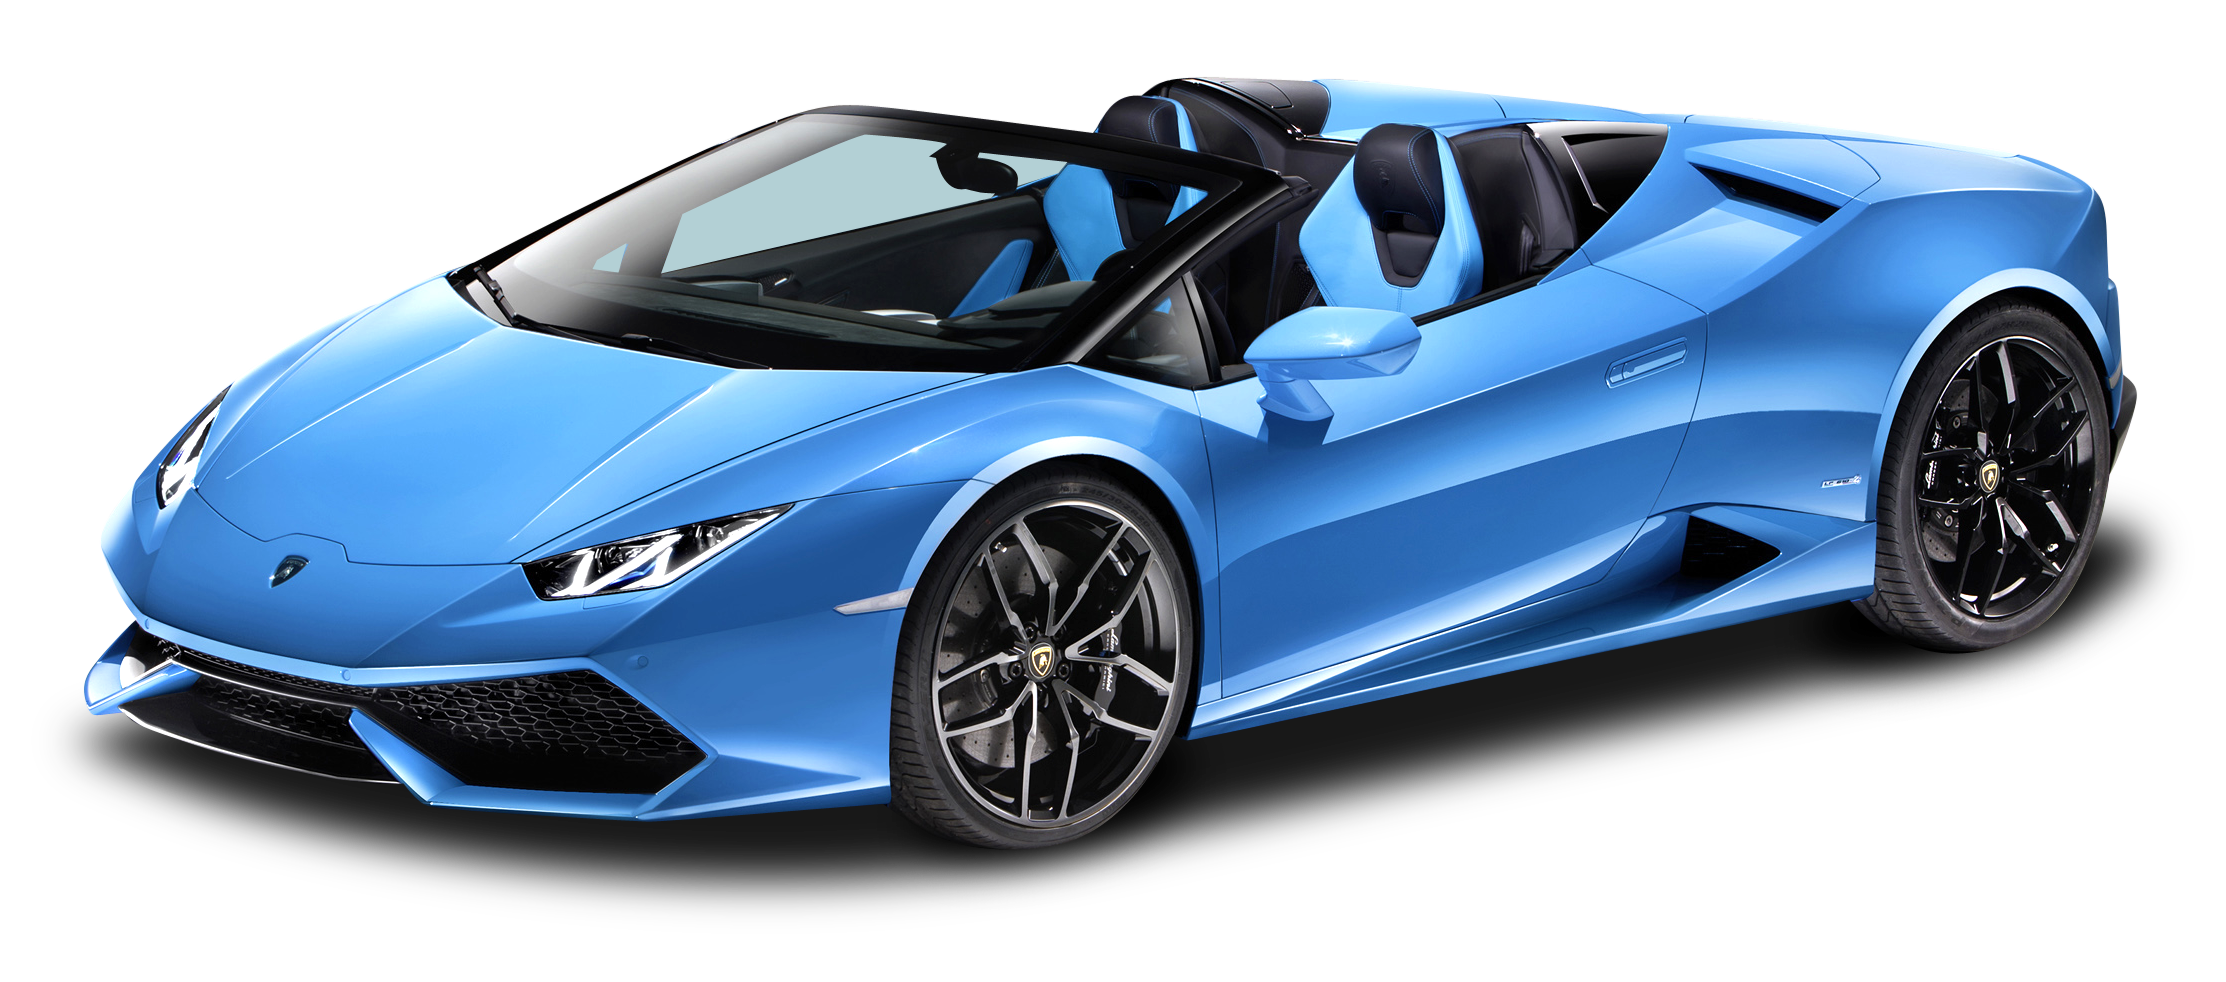 Imagen Convertible Lamborghini PNG de alta calidad